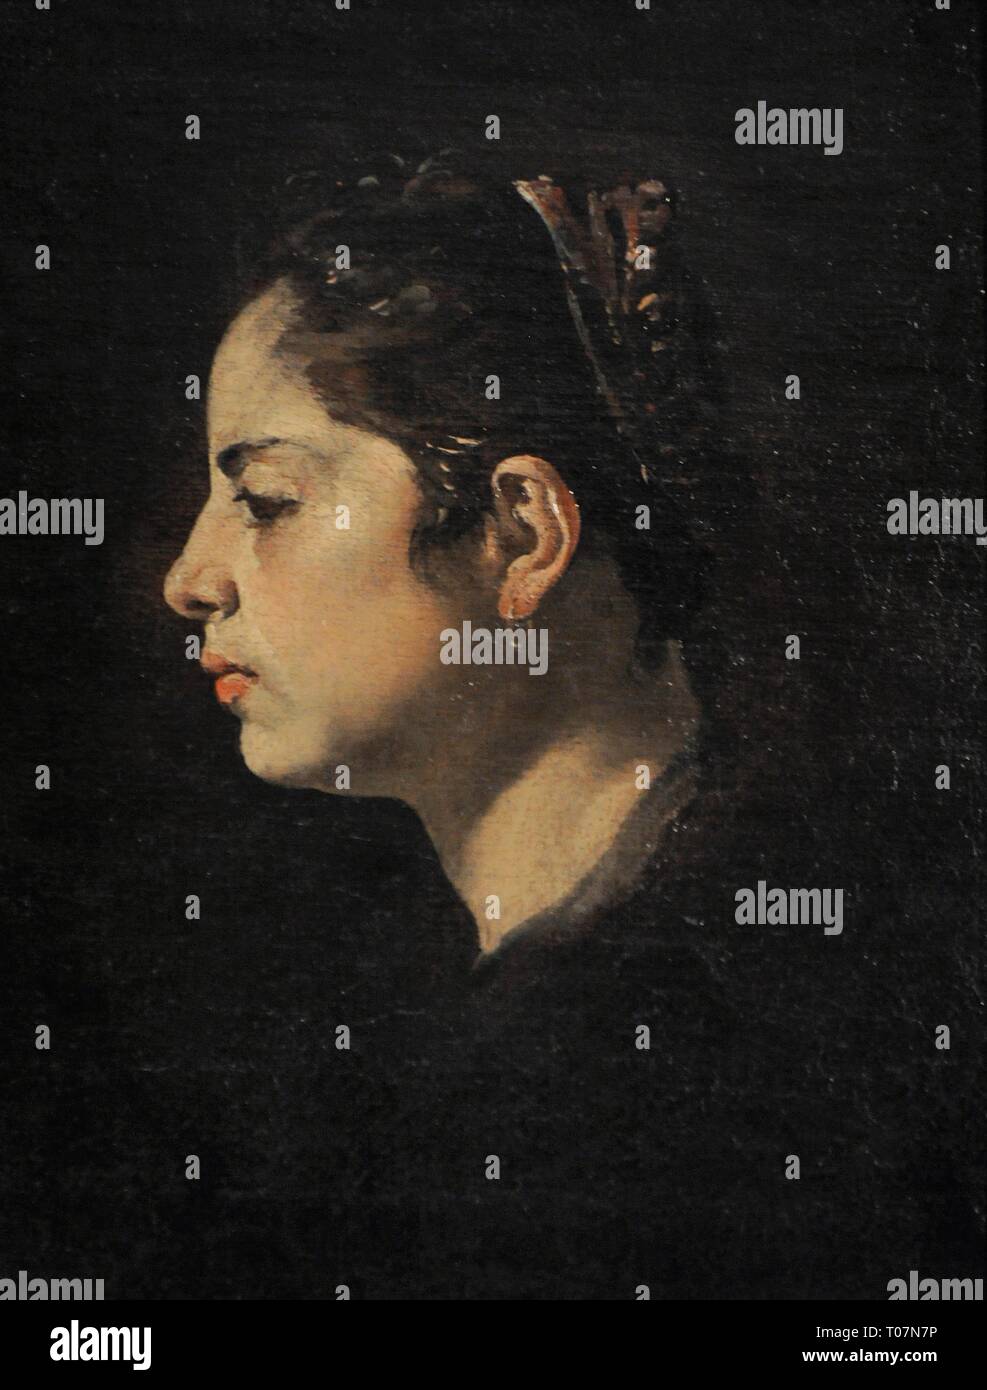 Atribuído a Diego Rodríguez de Silva y Velázquez (1599-1660). Pintor barroco español. Cabeza de muchacha, hacia 1624. Museo Lázaro Galdiano. Madrid. España. Stock Photo